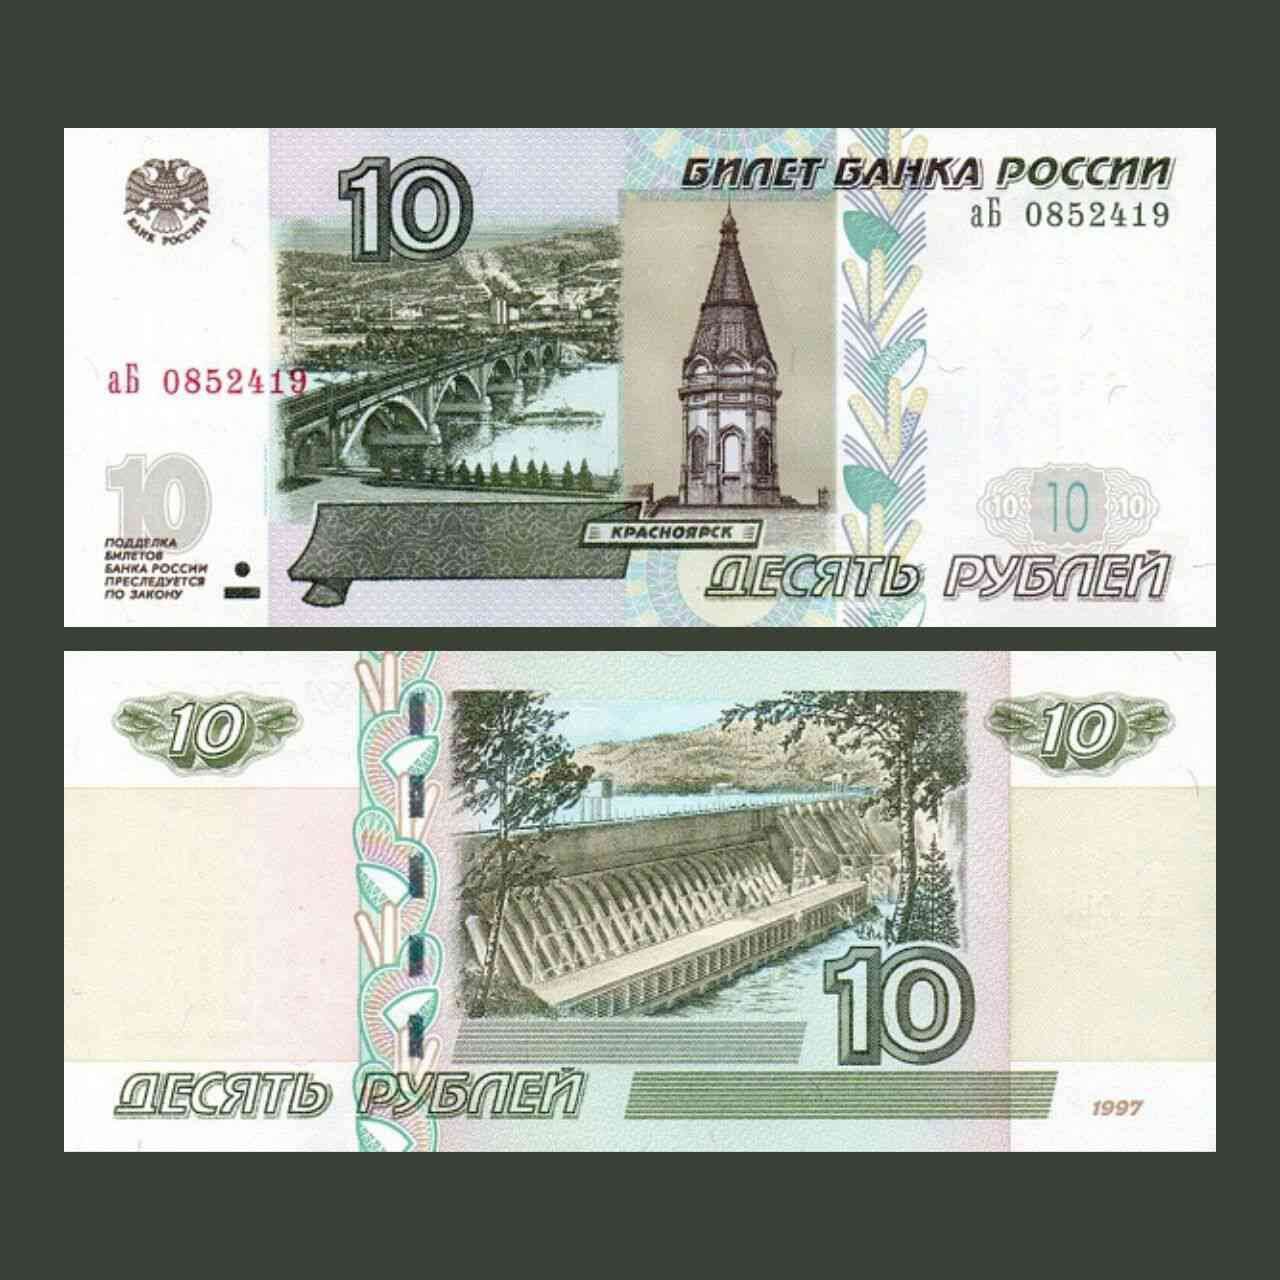 600 рублей россии. 10 Рублей купюра. 10 Рублей банкнота. 10 Рублей 1997 модификация 2004. Банкнота 10 рублей 1997.